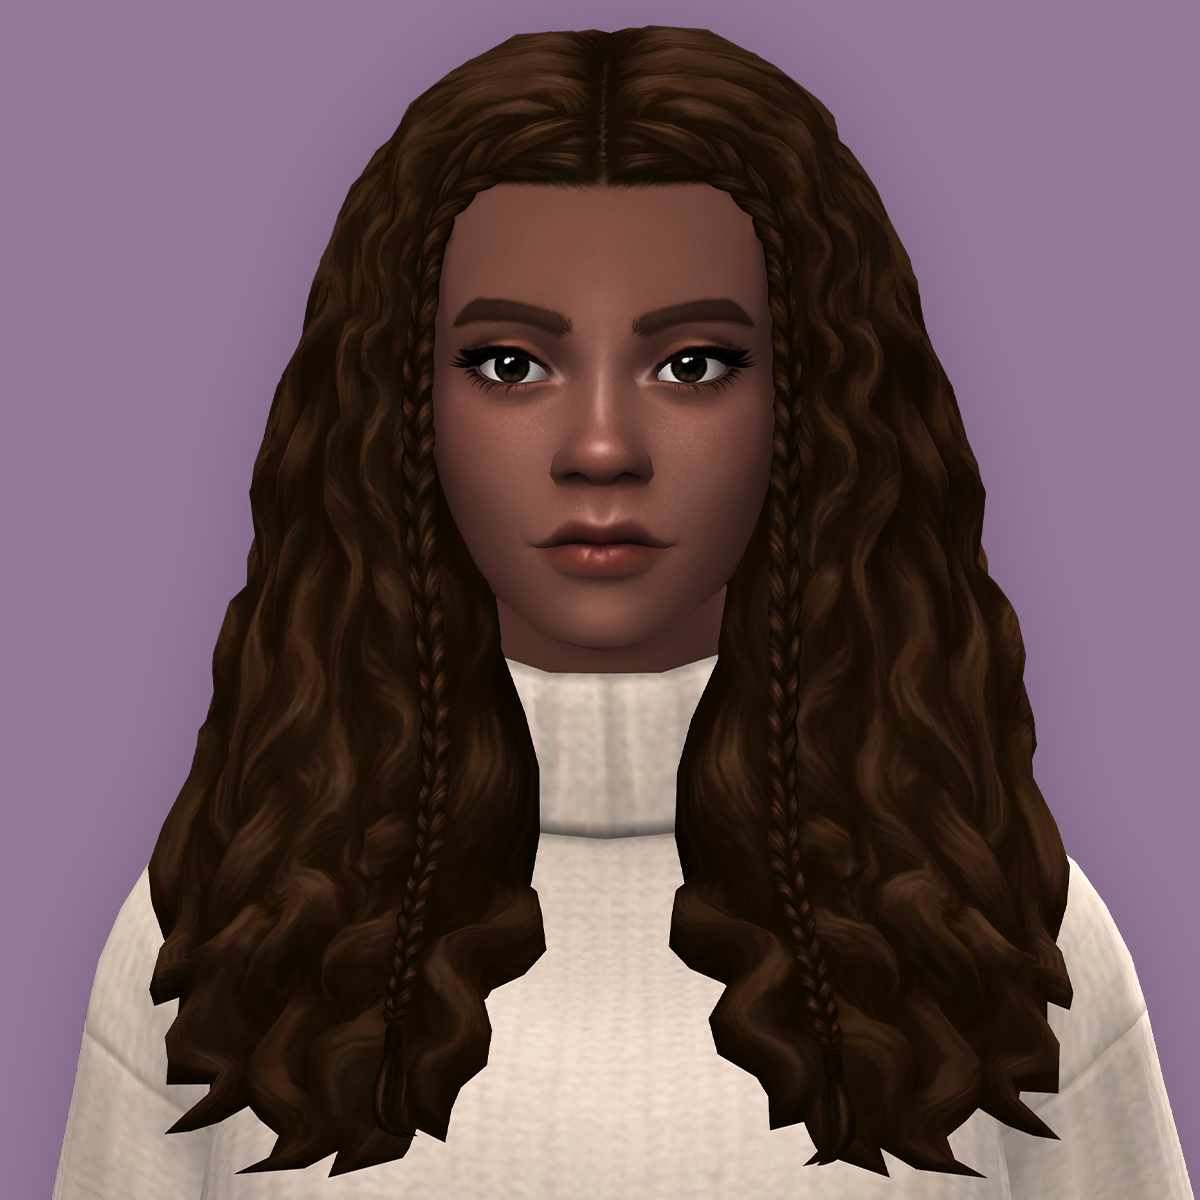 QICC - Cynthia Hair - The Sims 4 Create a Sim - CurseForge